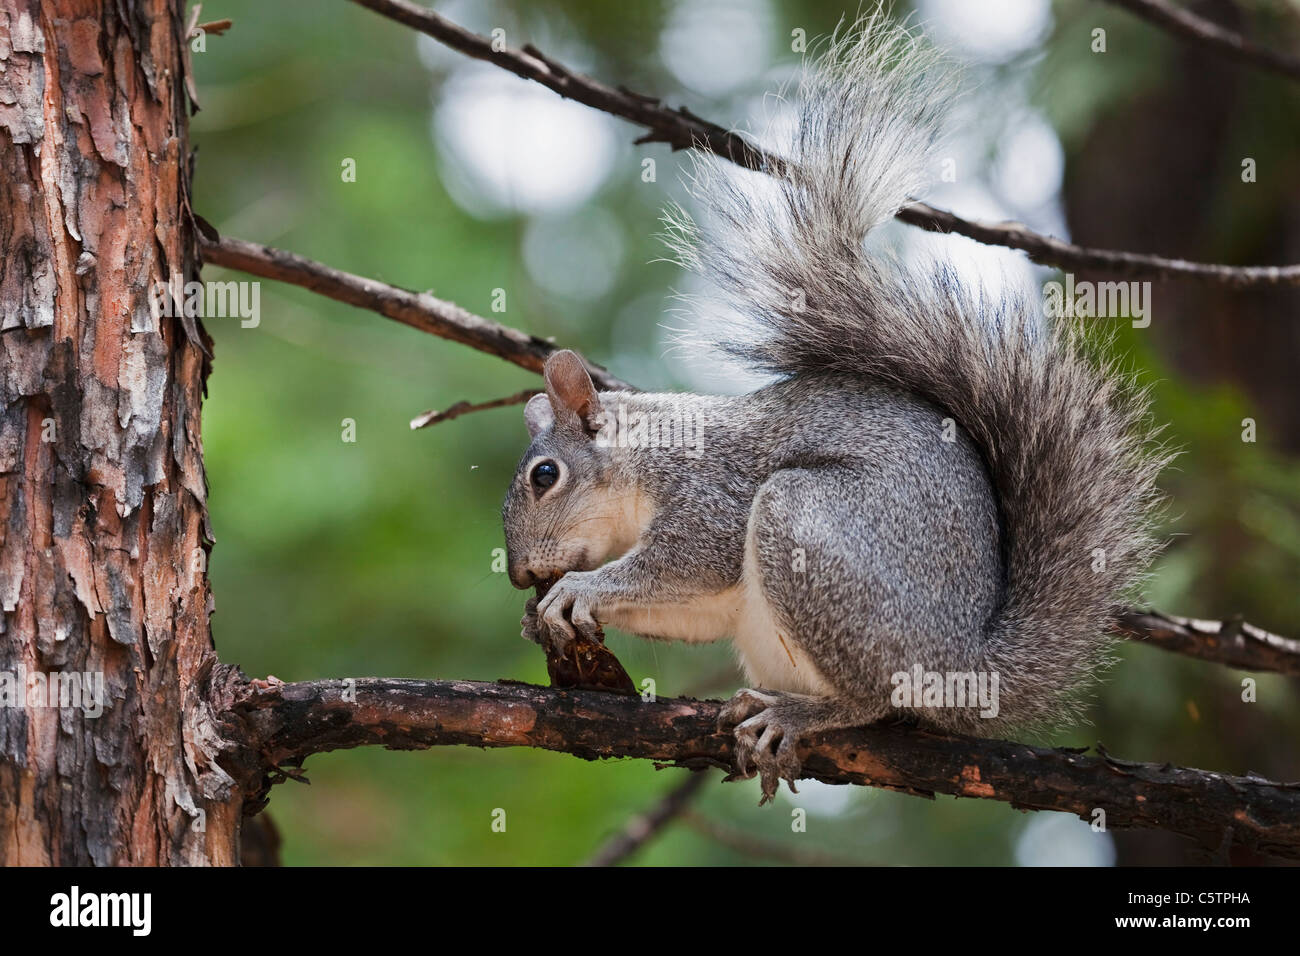 USA, California, Yosemite National Park, Grey squirrel (Sciurus griseus), close-up Stock Photo